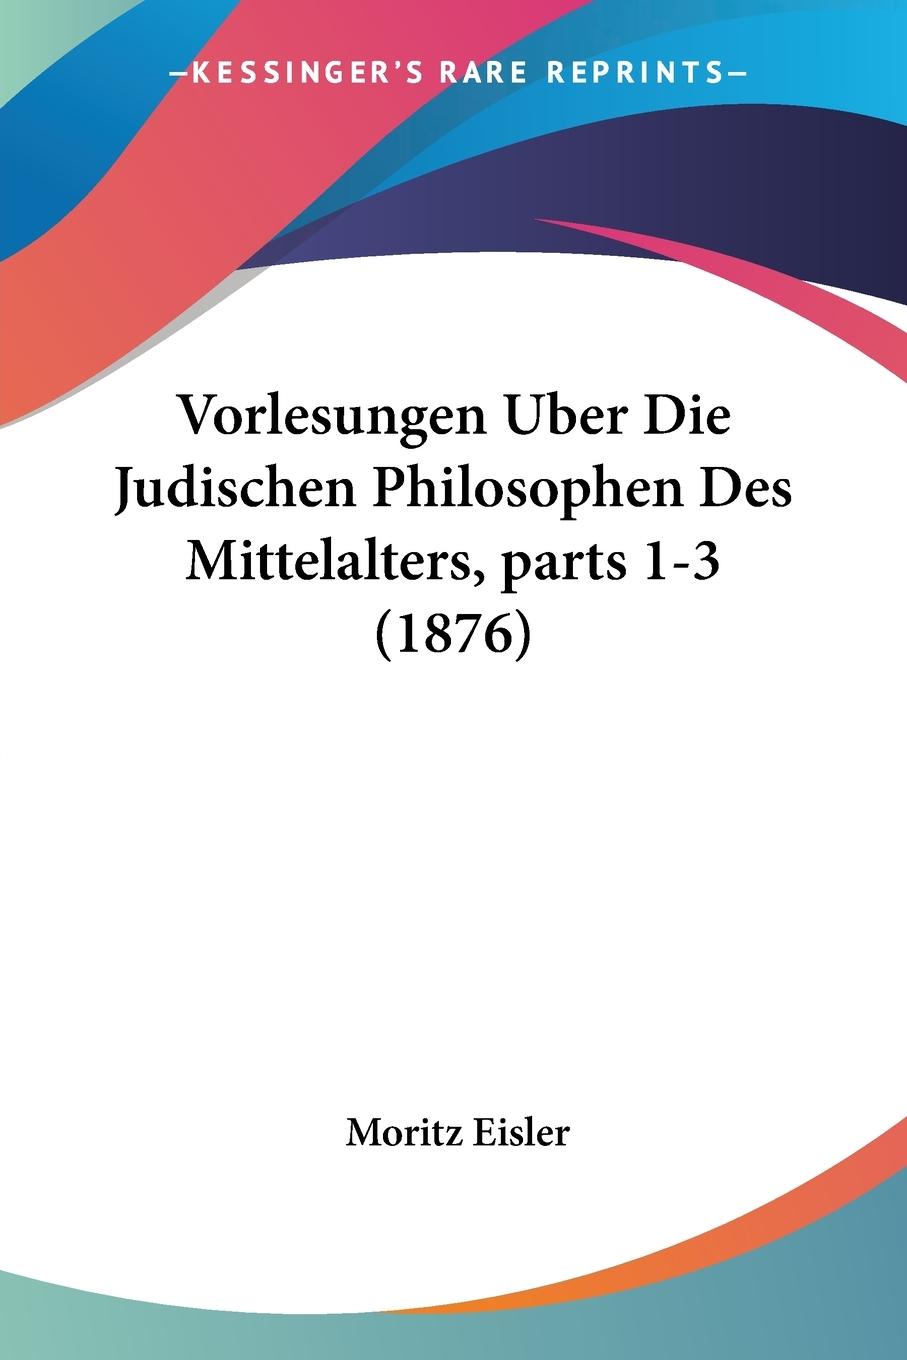 Vorlesungen Uber Die Judischen Philosophen Des Mittelalters, parts 1-3 (1876) - Eisler, Moritz